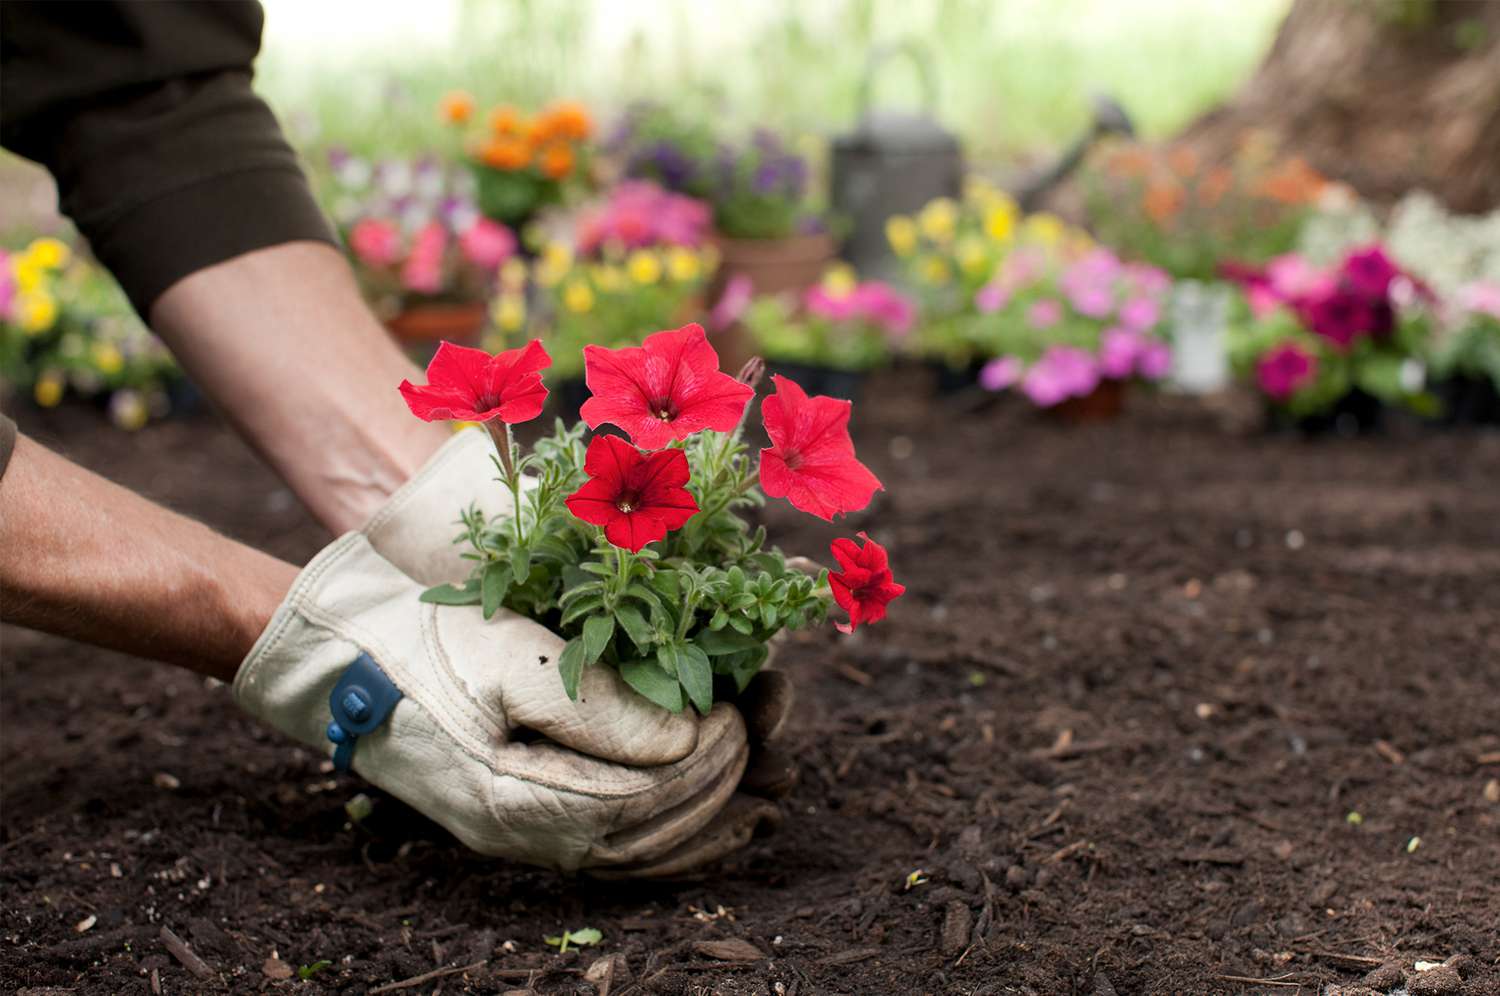 How to Start a Flower Garden If You're a Beginner